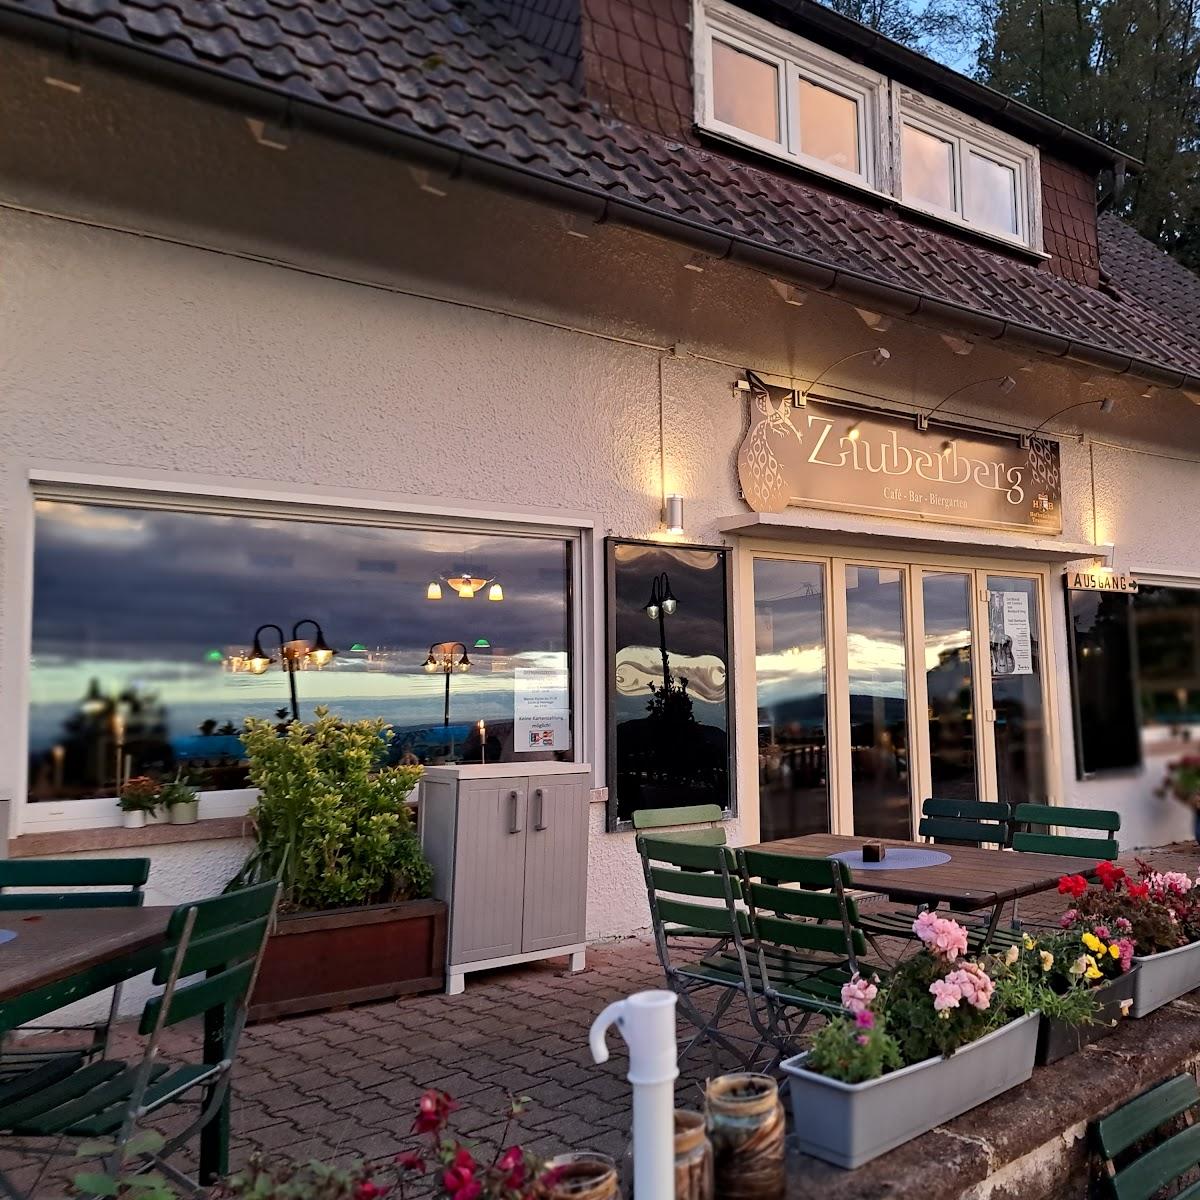 Restaurant "straubenhardt" in Straubenhardt